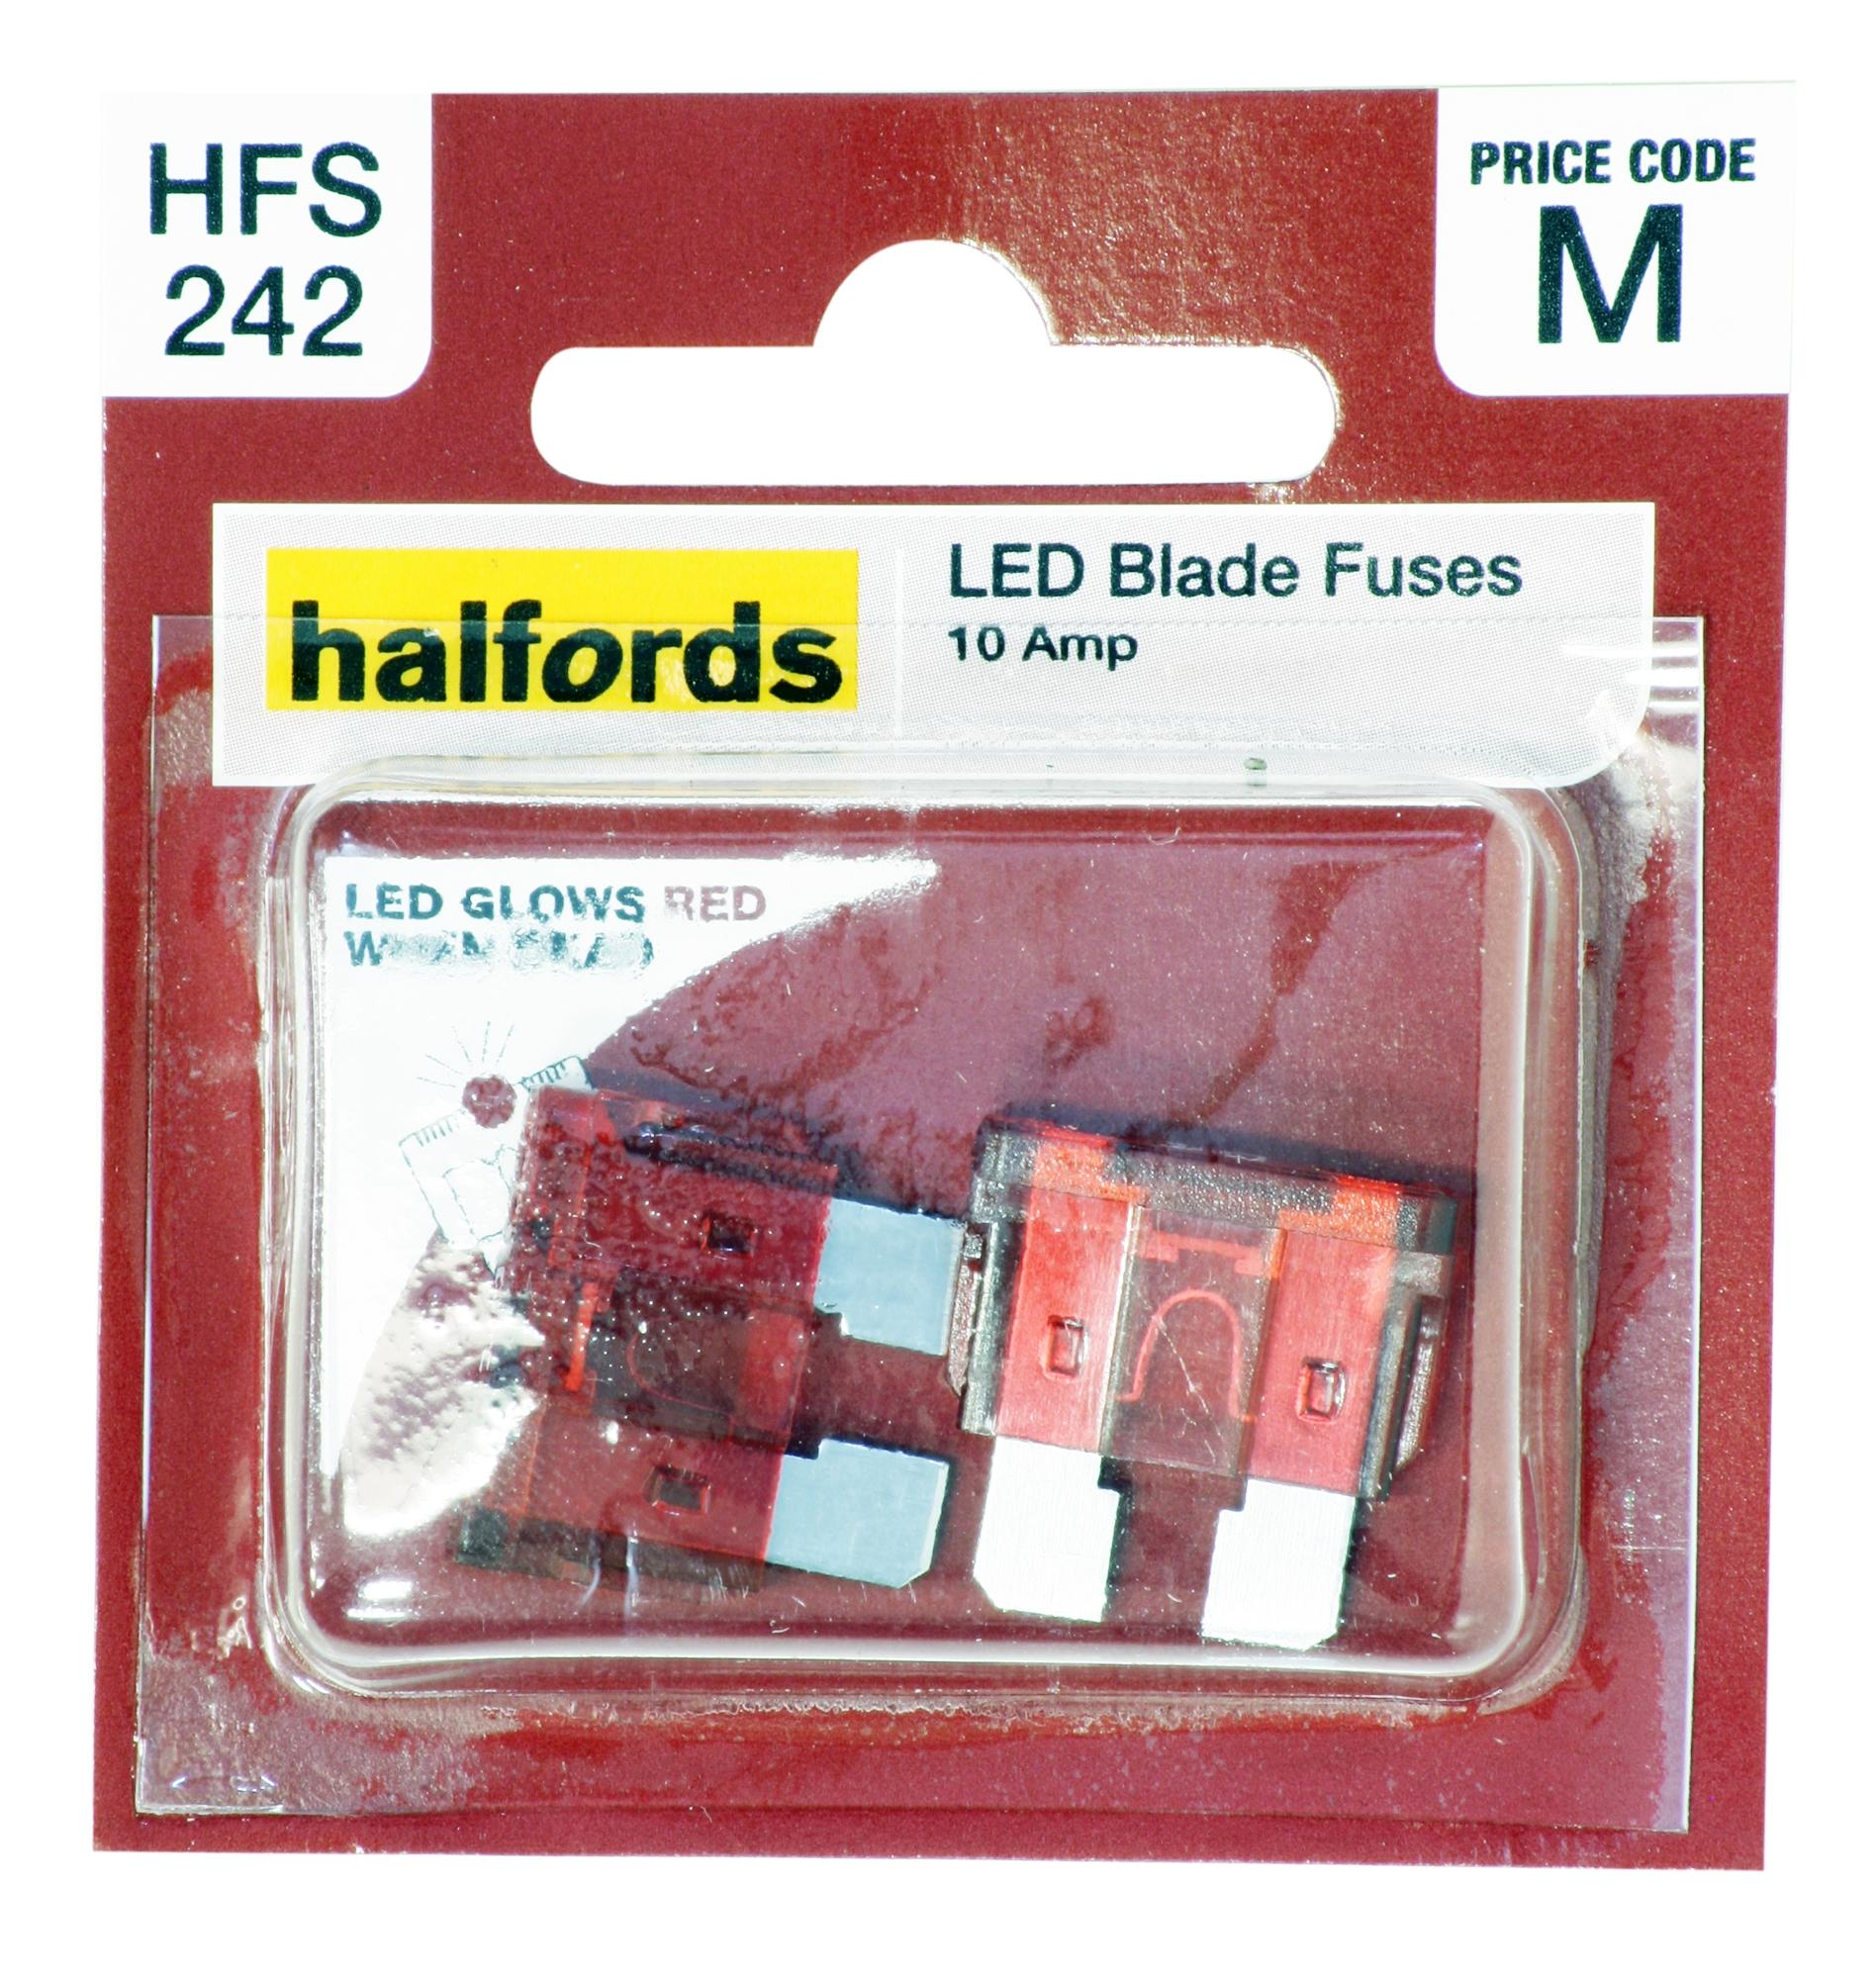 Halfords Led Blade Fuses 10 Amp (Hfs242)